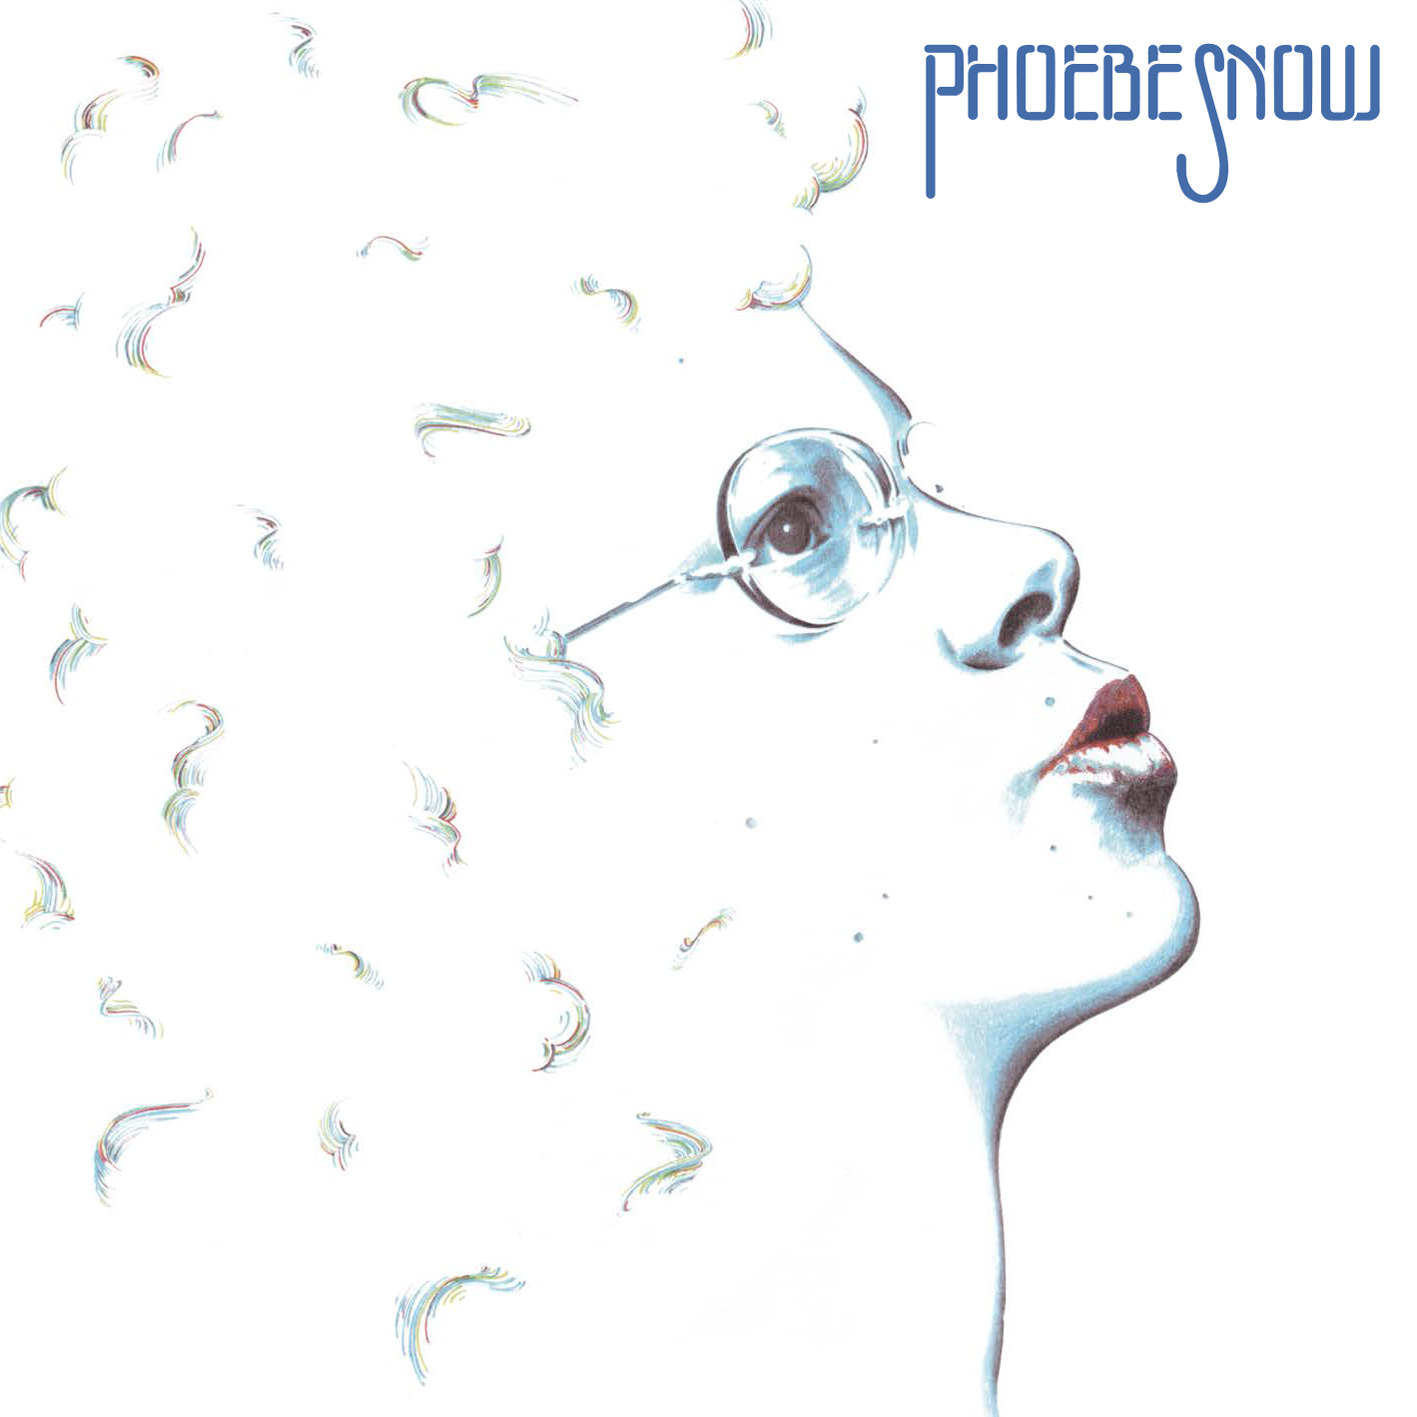 Phoebe Snow – Phoebe Snow (1974) [APO Remaster 2014] SACD ISO